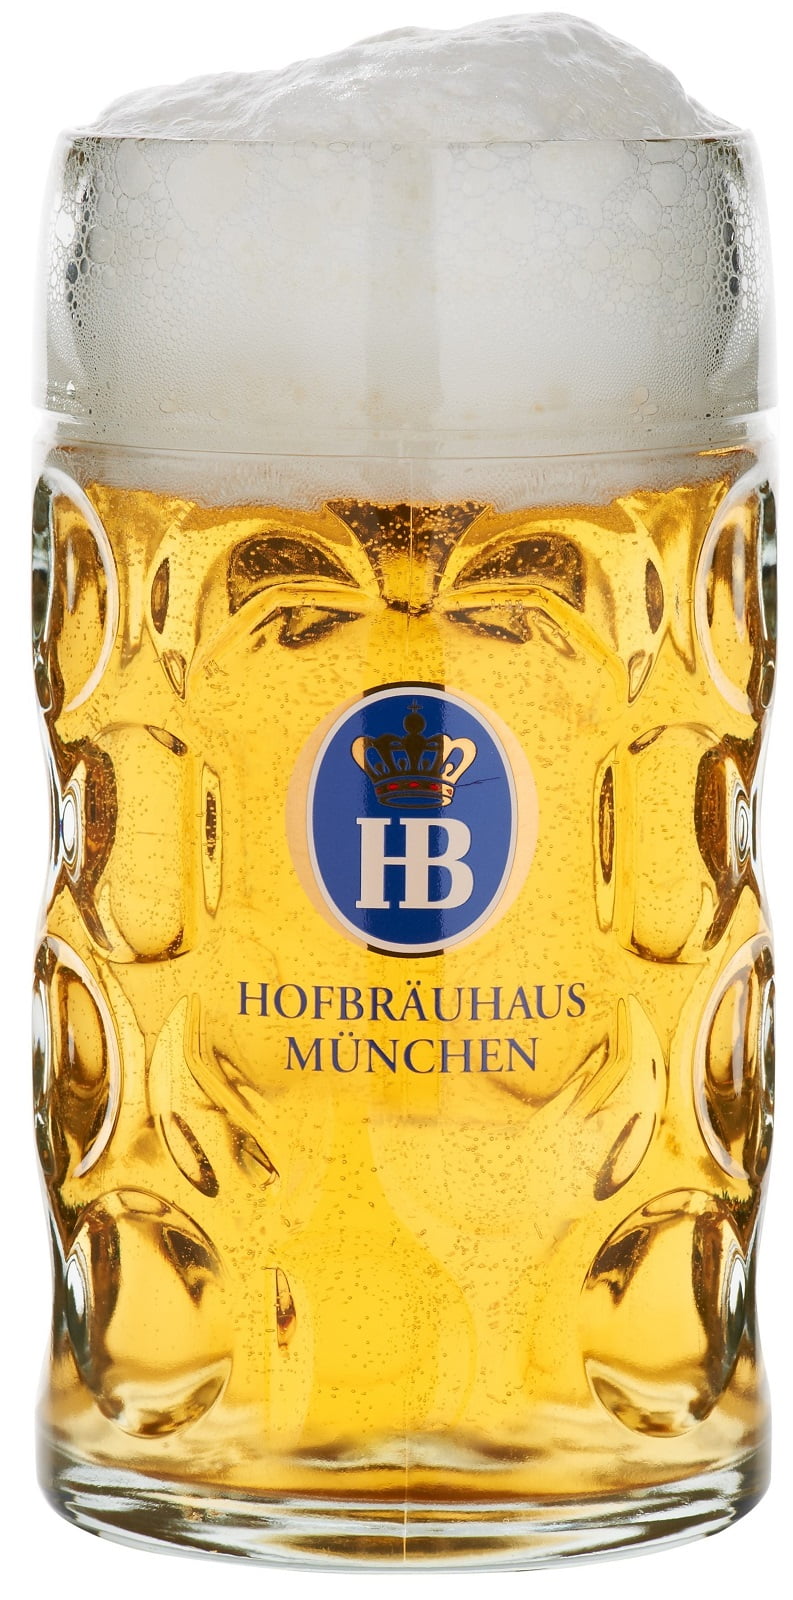 Details about   Hofbrauhaus Munich Munchen German Glass Dimple Beer Mug 